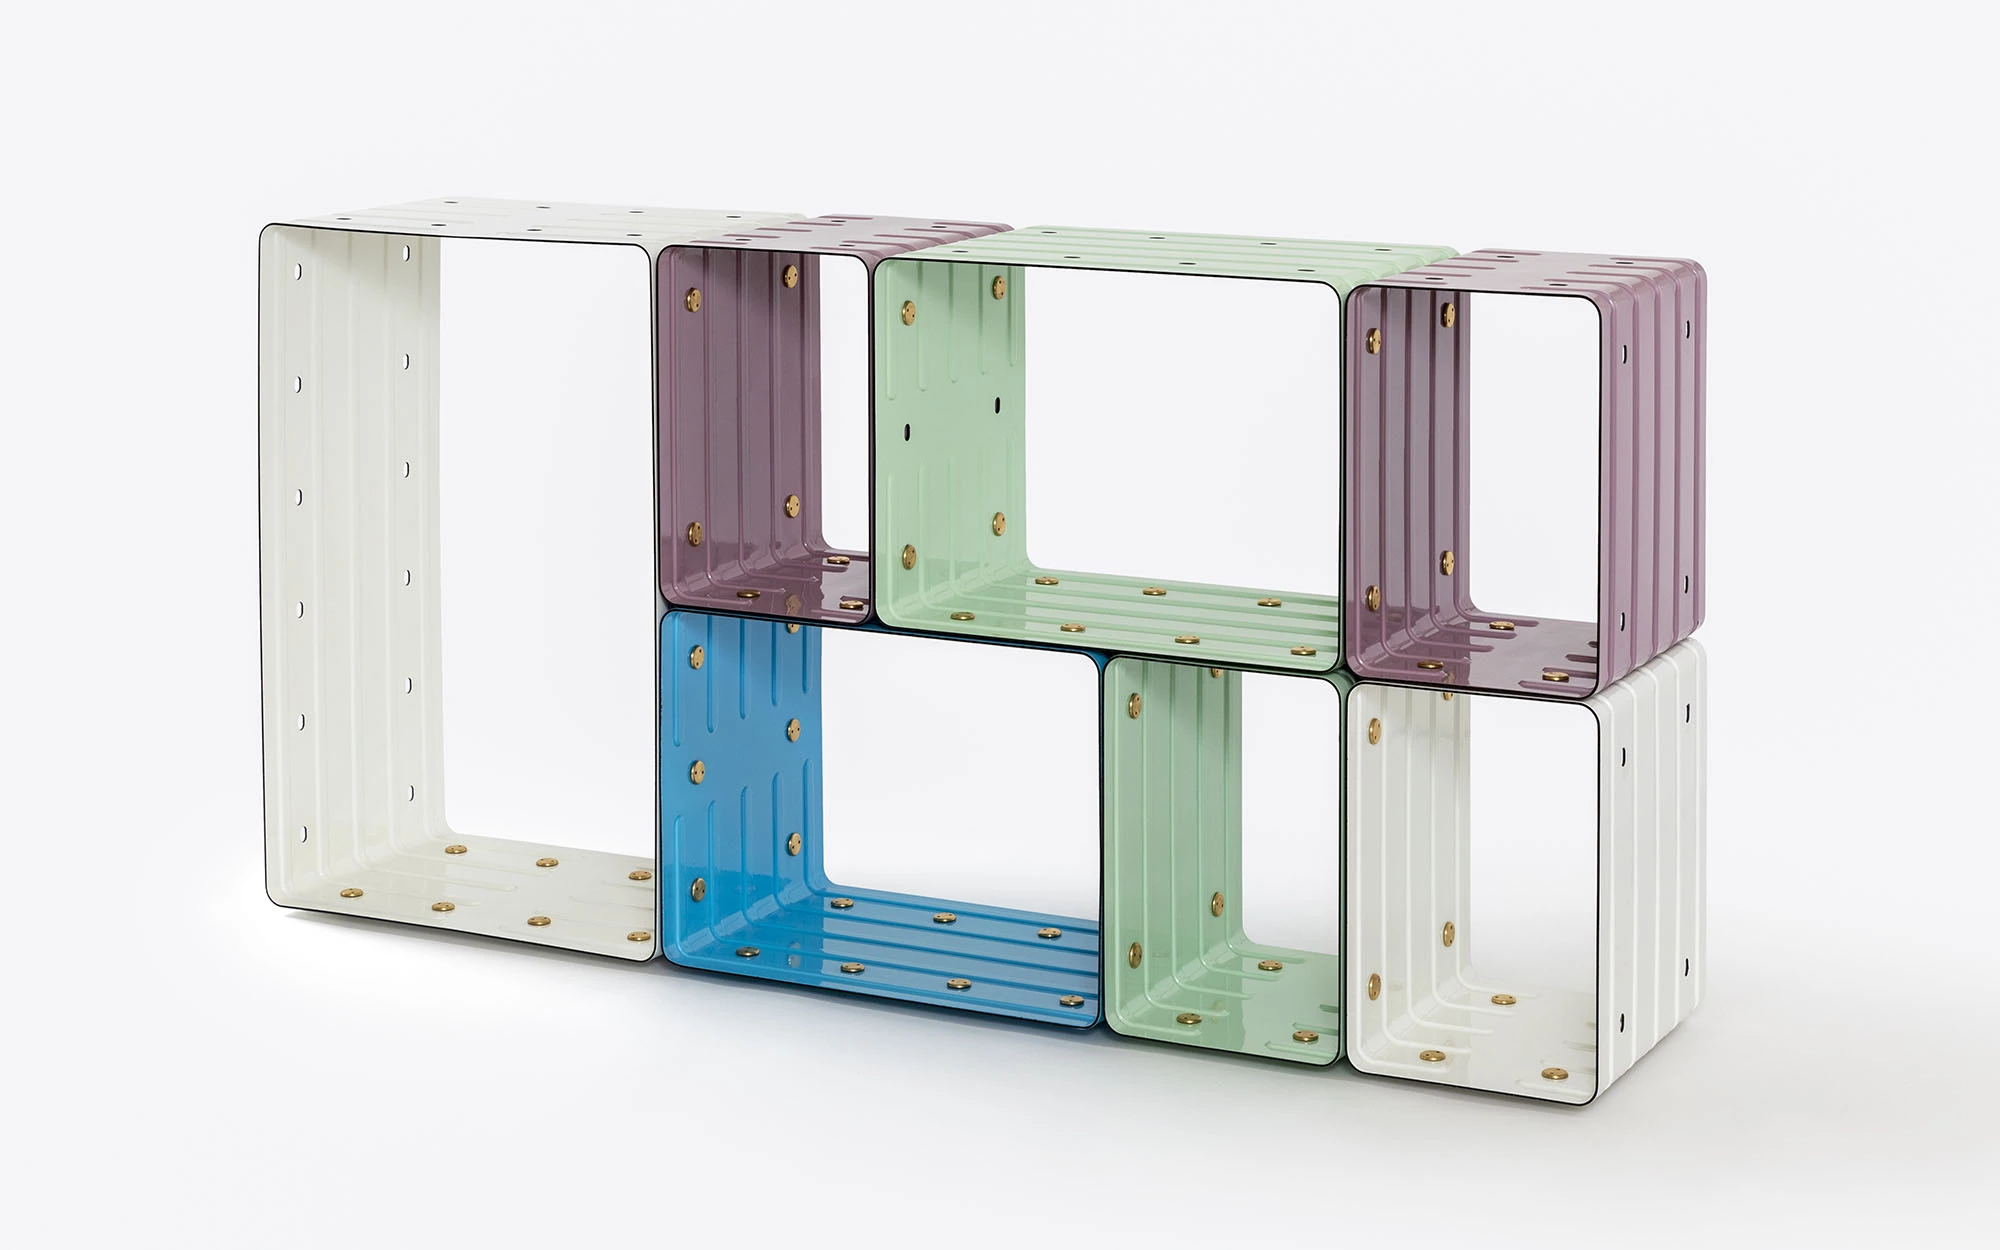 Quobus 1,2,4 multicolored - Marc Newson - Bookshelf - Galerie kreo